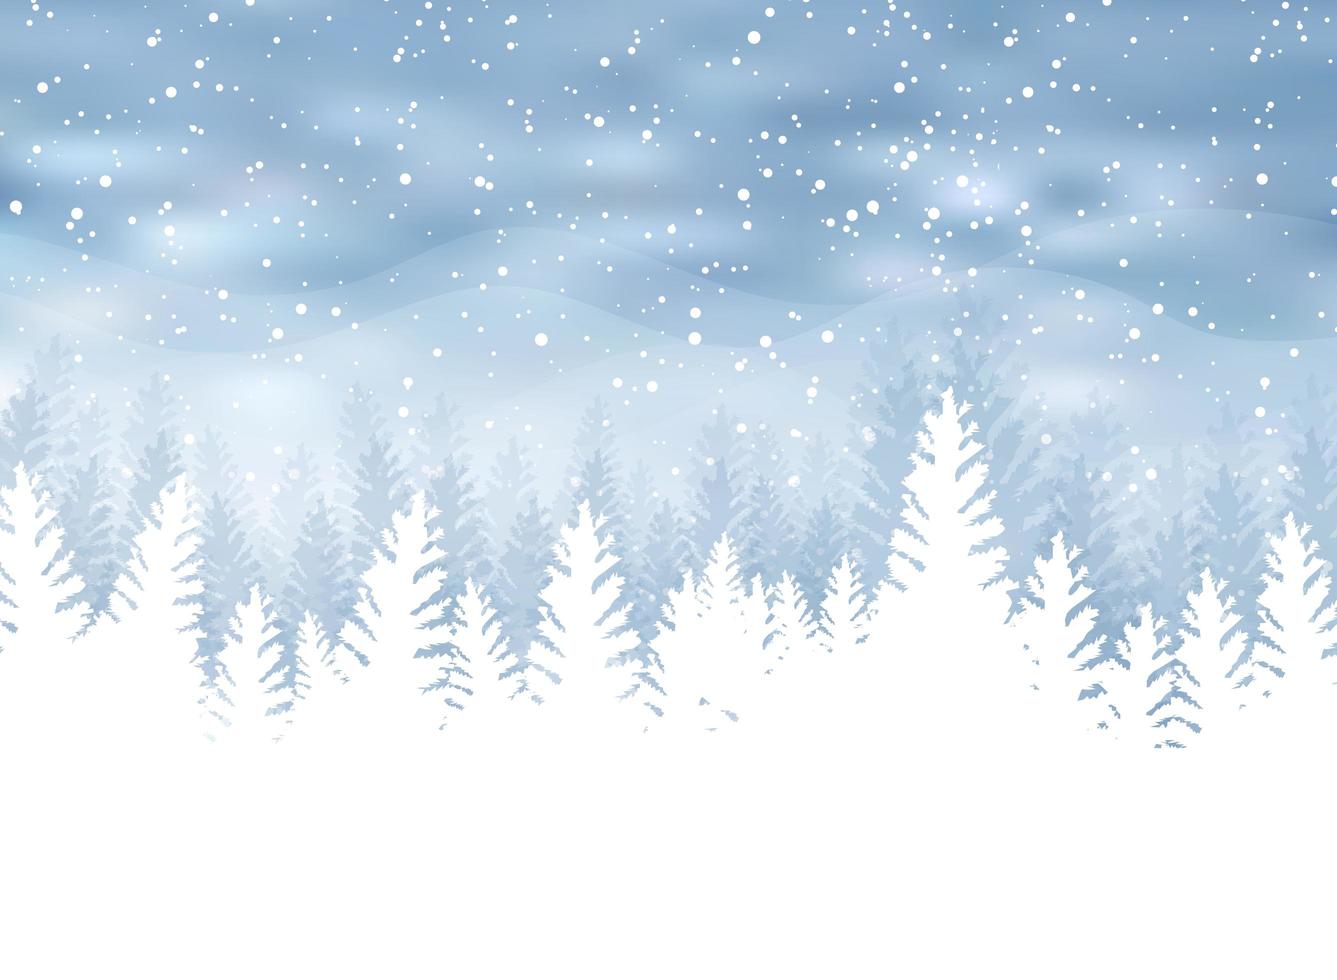 Inverno de Natal em fundo azul. neve branca com flocos de neve na luz brilhante prata. árvore de Natal. vetor